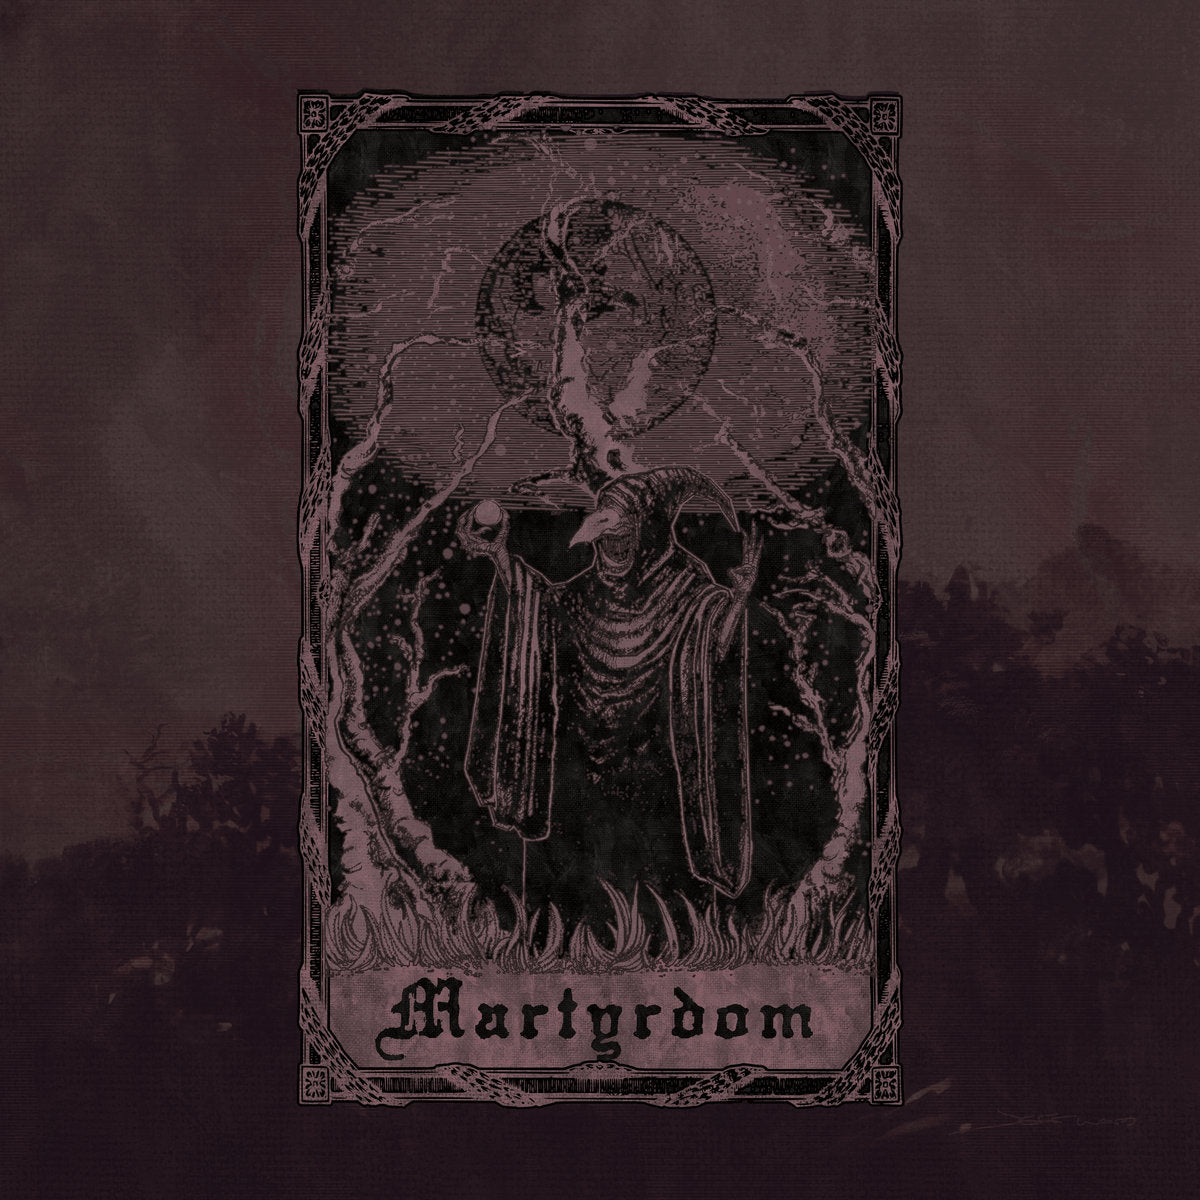 Inanimus - Martyrdom [Doom Metal] (Barrow Hoard - CD - 12/13/22)